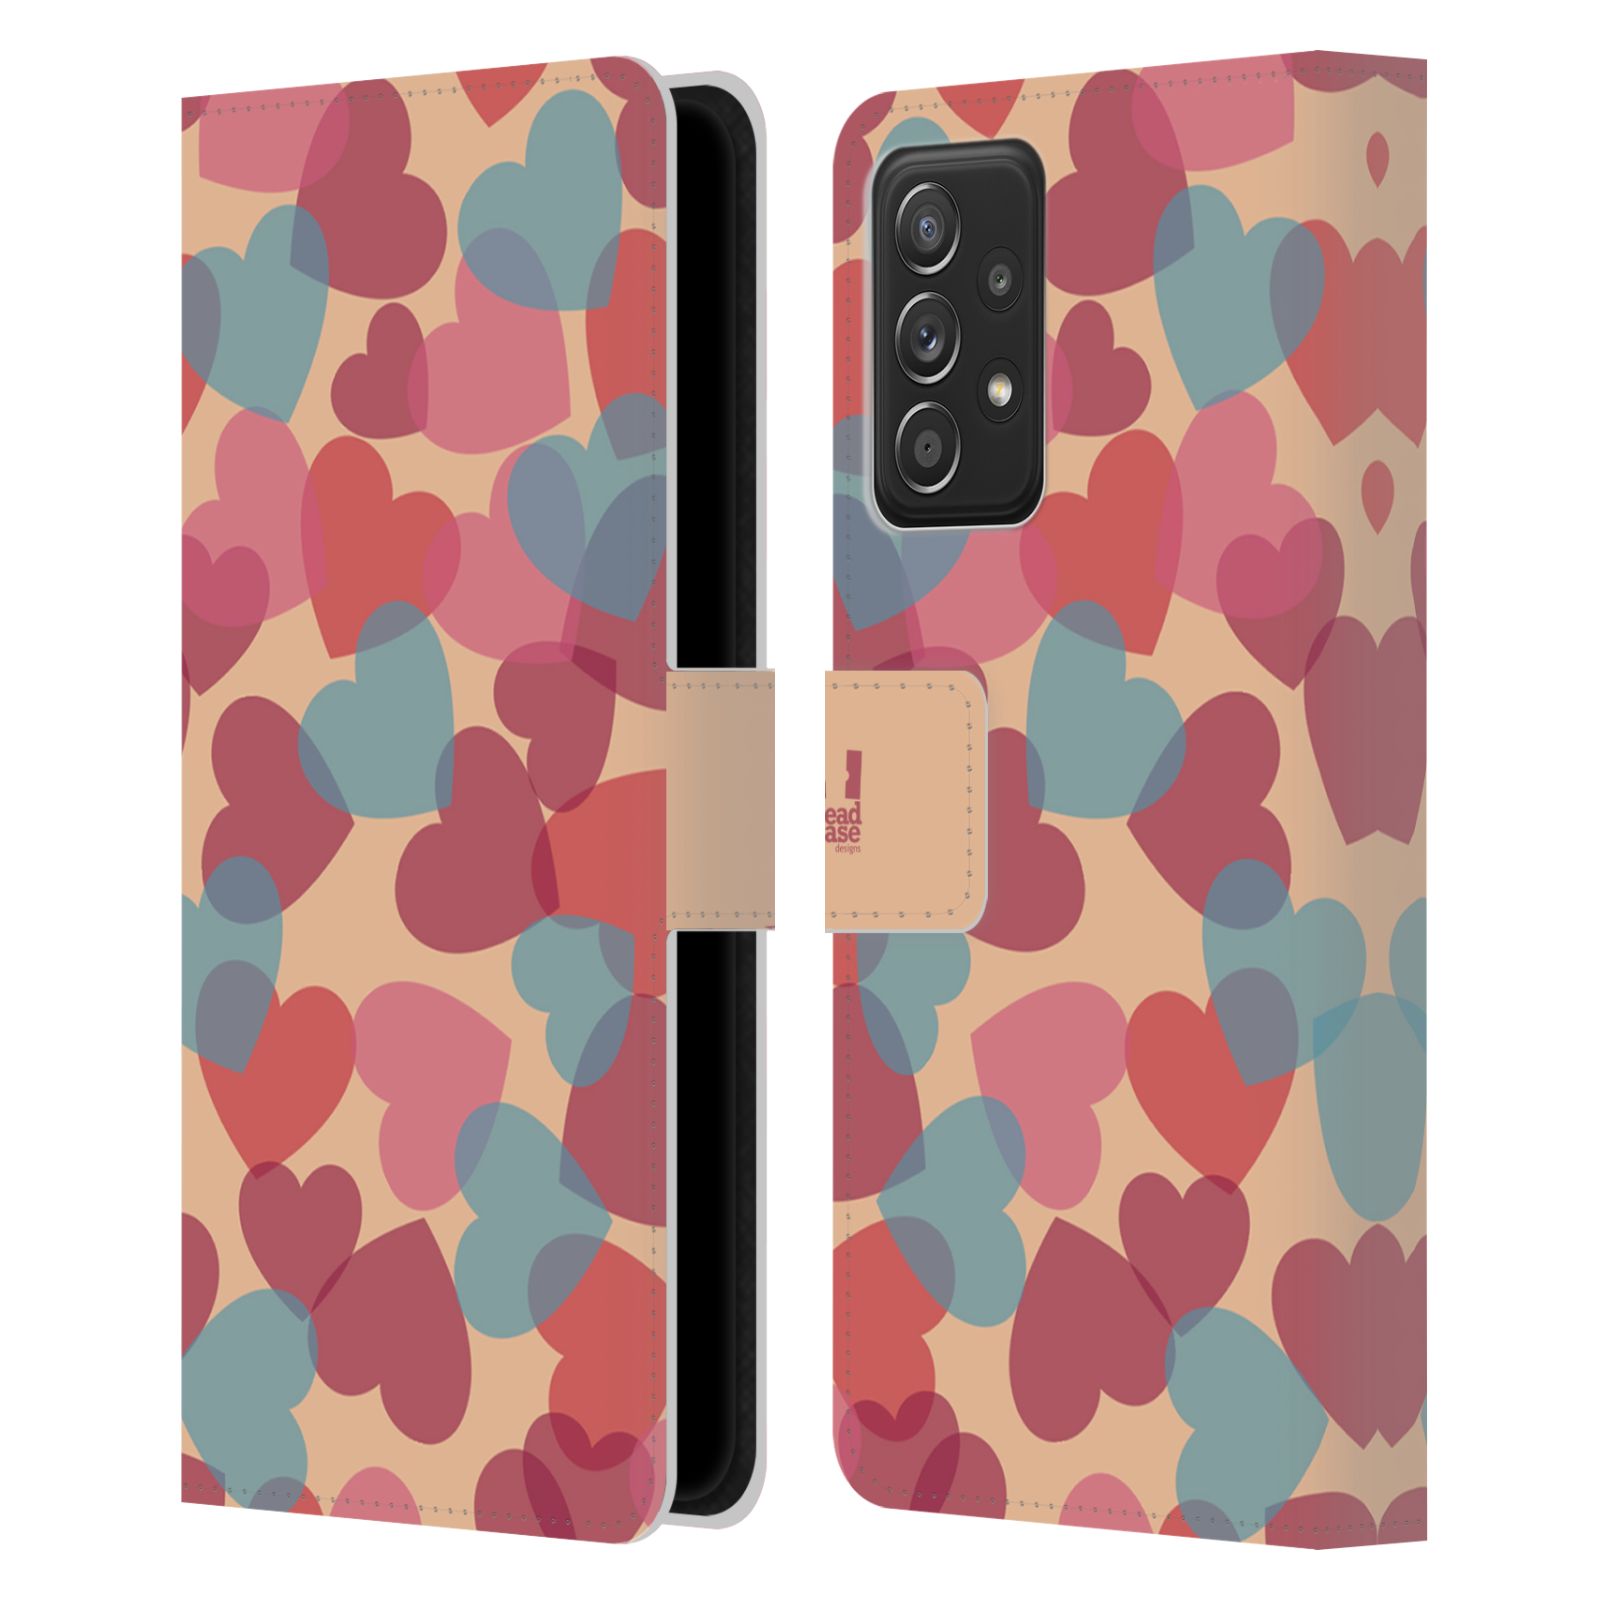 Pouzdro HEAD CASE na mobil Samsung Galaxy A52 / A52 5G / A52s 5G vzor prolínající se srdíčka, srdce, láska, růžová